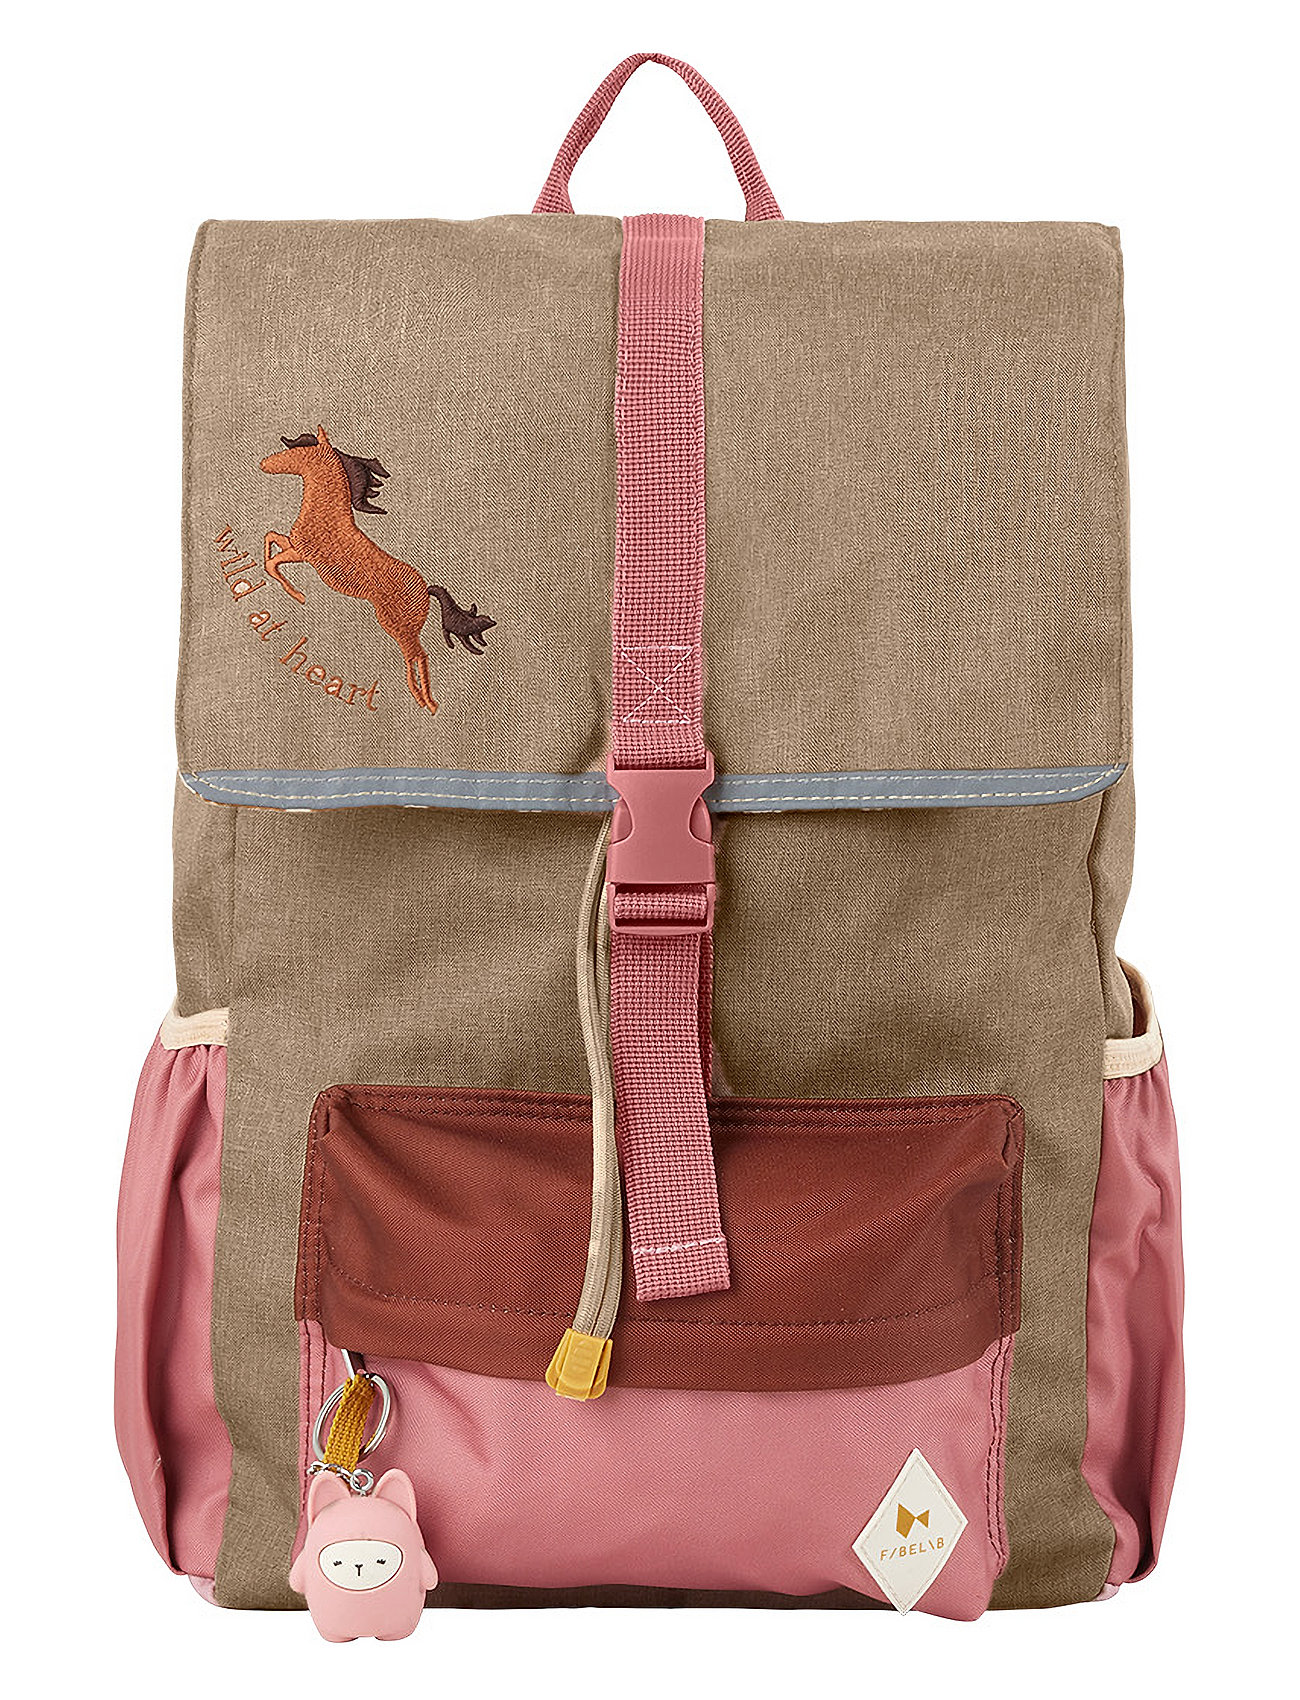 Backpack - Large - Wild At Heart Ryggsäck Väska Multi/patterned Fabelab